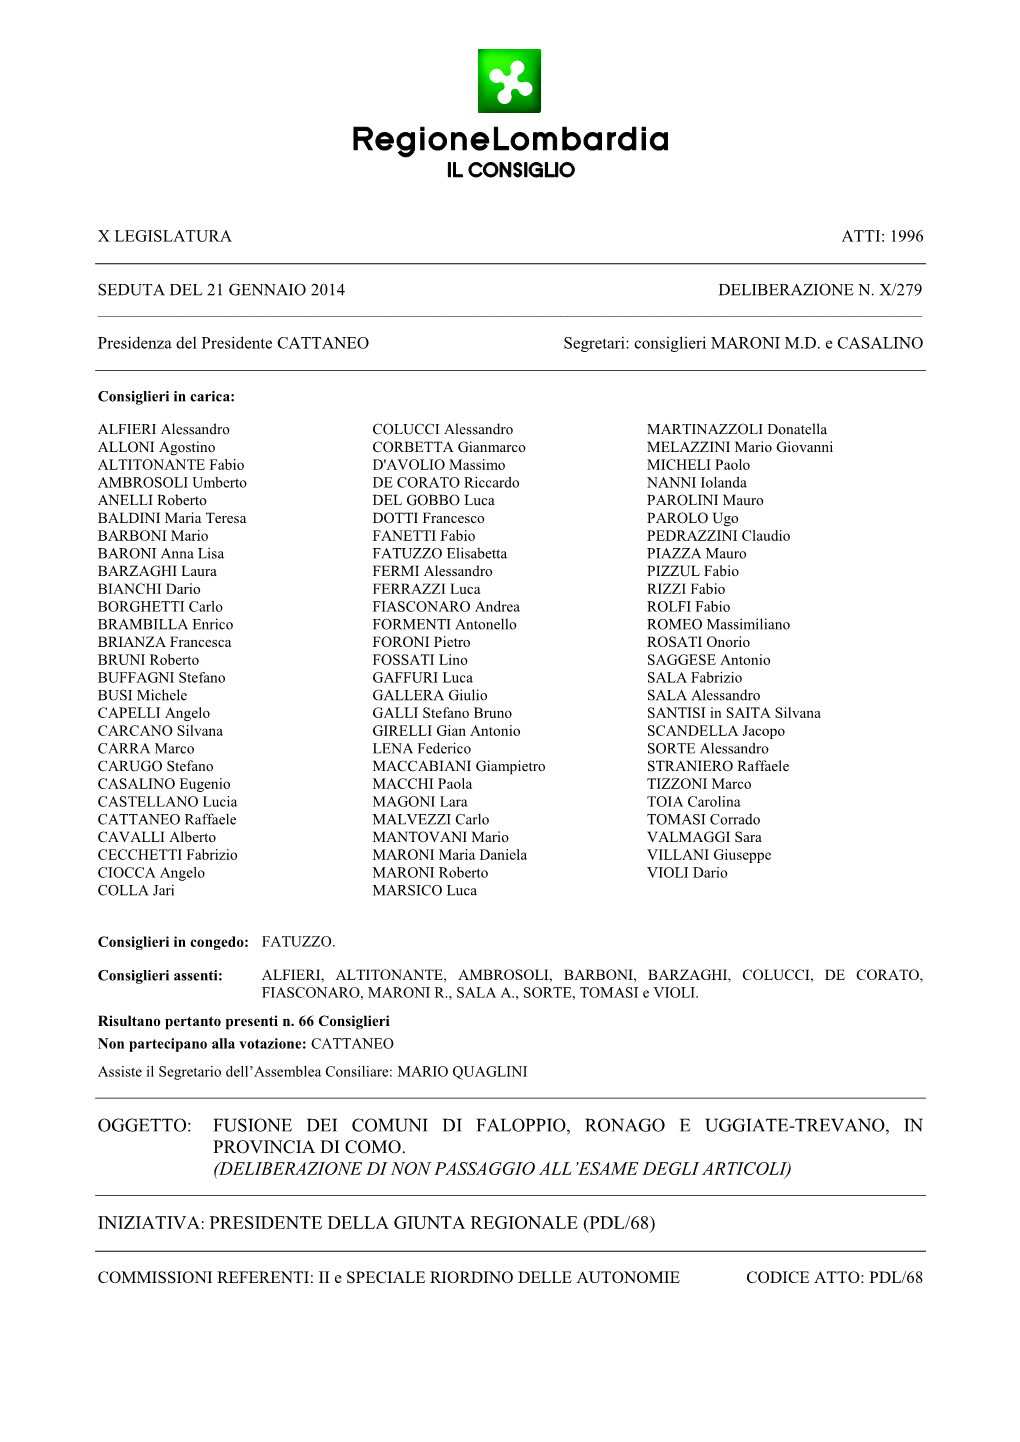 Oggetto: Fusione Dei Comuni Di Faloppio, Ronago E Uggiate-Trevano, in Provincia Di Como. (Deliberazione Di Non Passaggio All'e